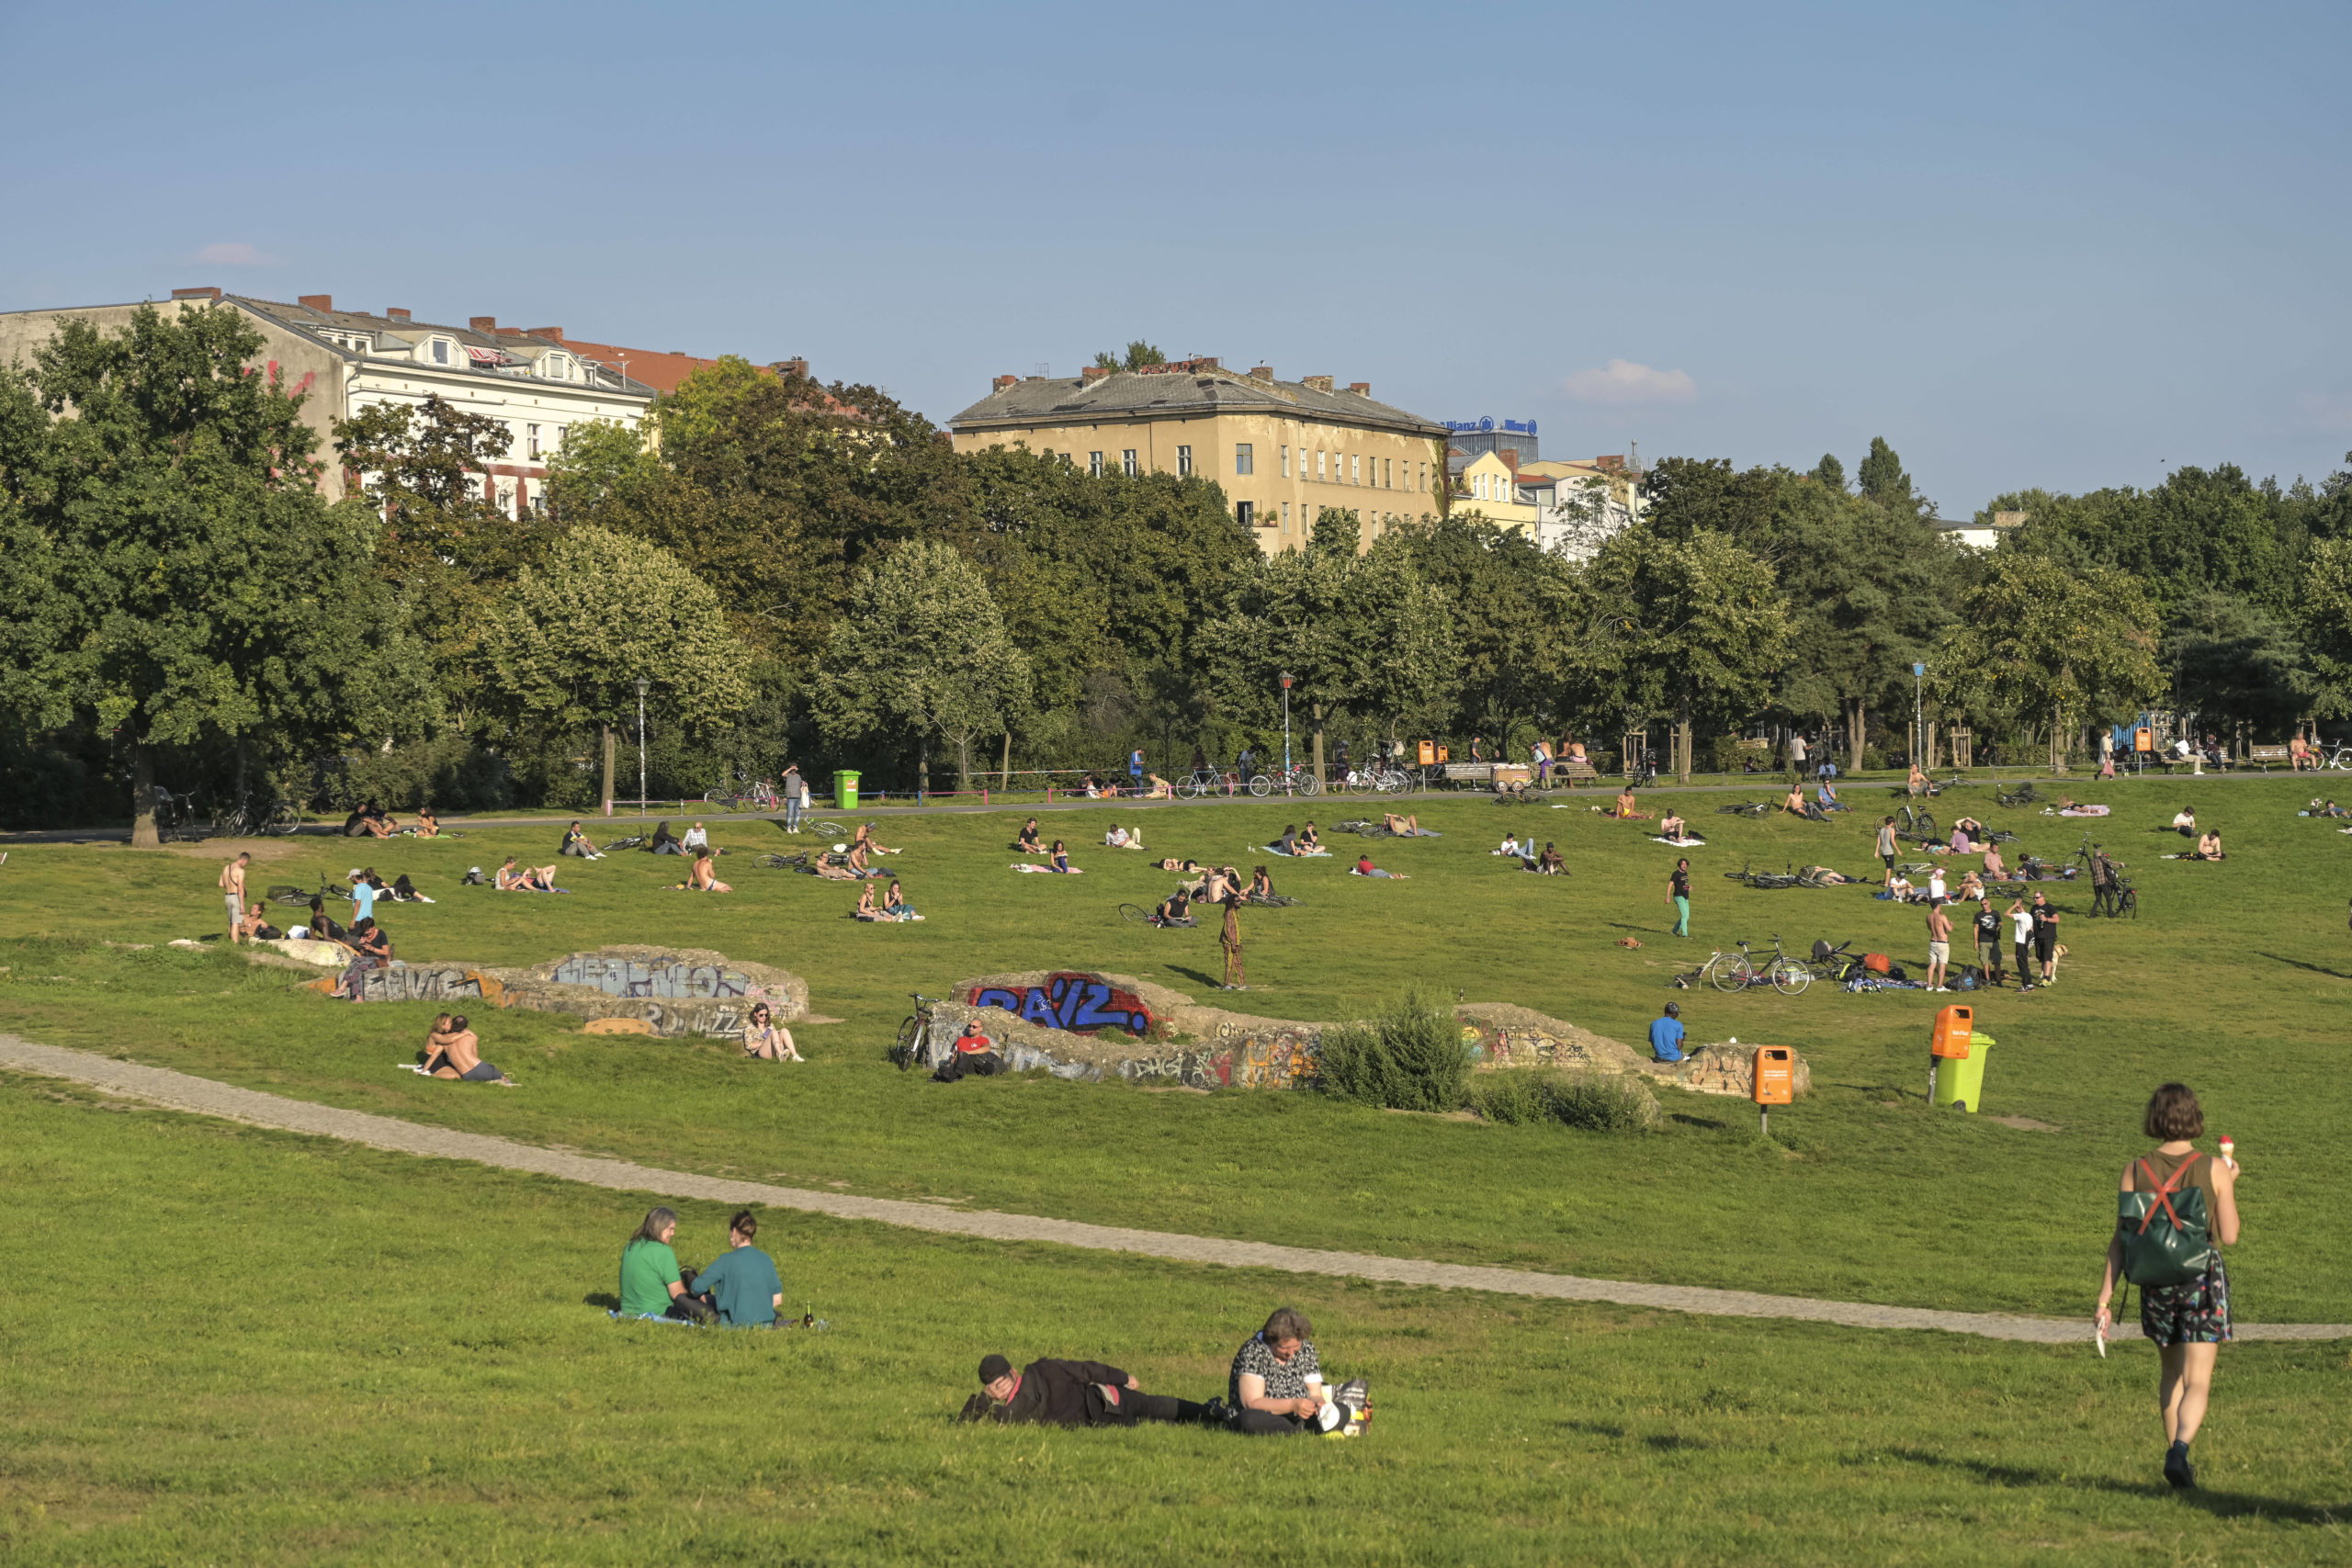 Liegewiesen in Berlin Multikultureller Treffpunkt: Im Görlitzer Park lautet das Motto "Leben und leben lassen."